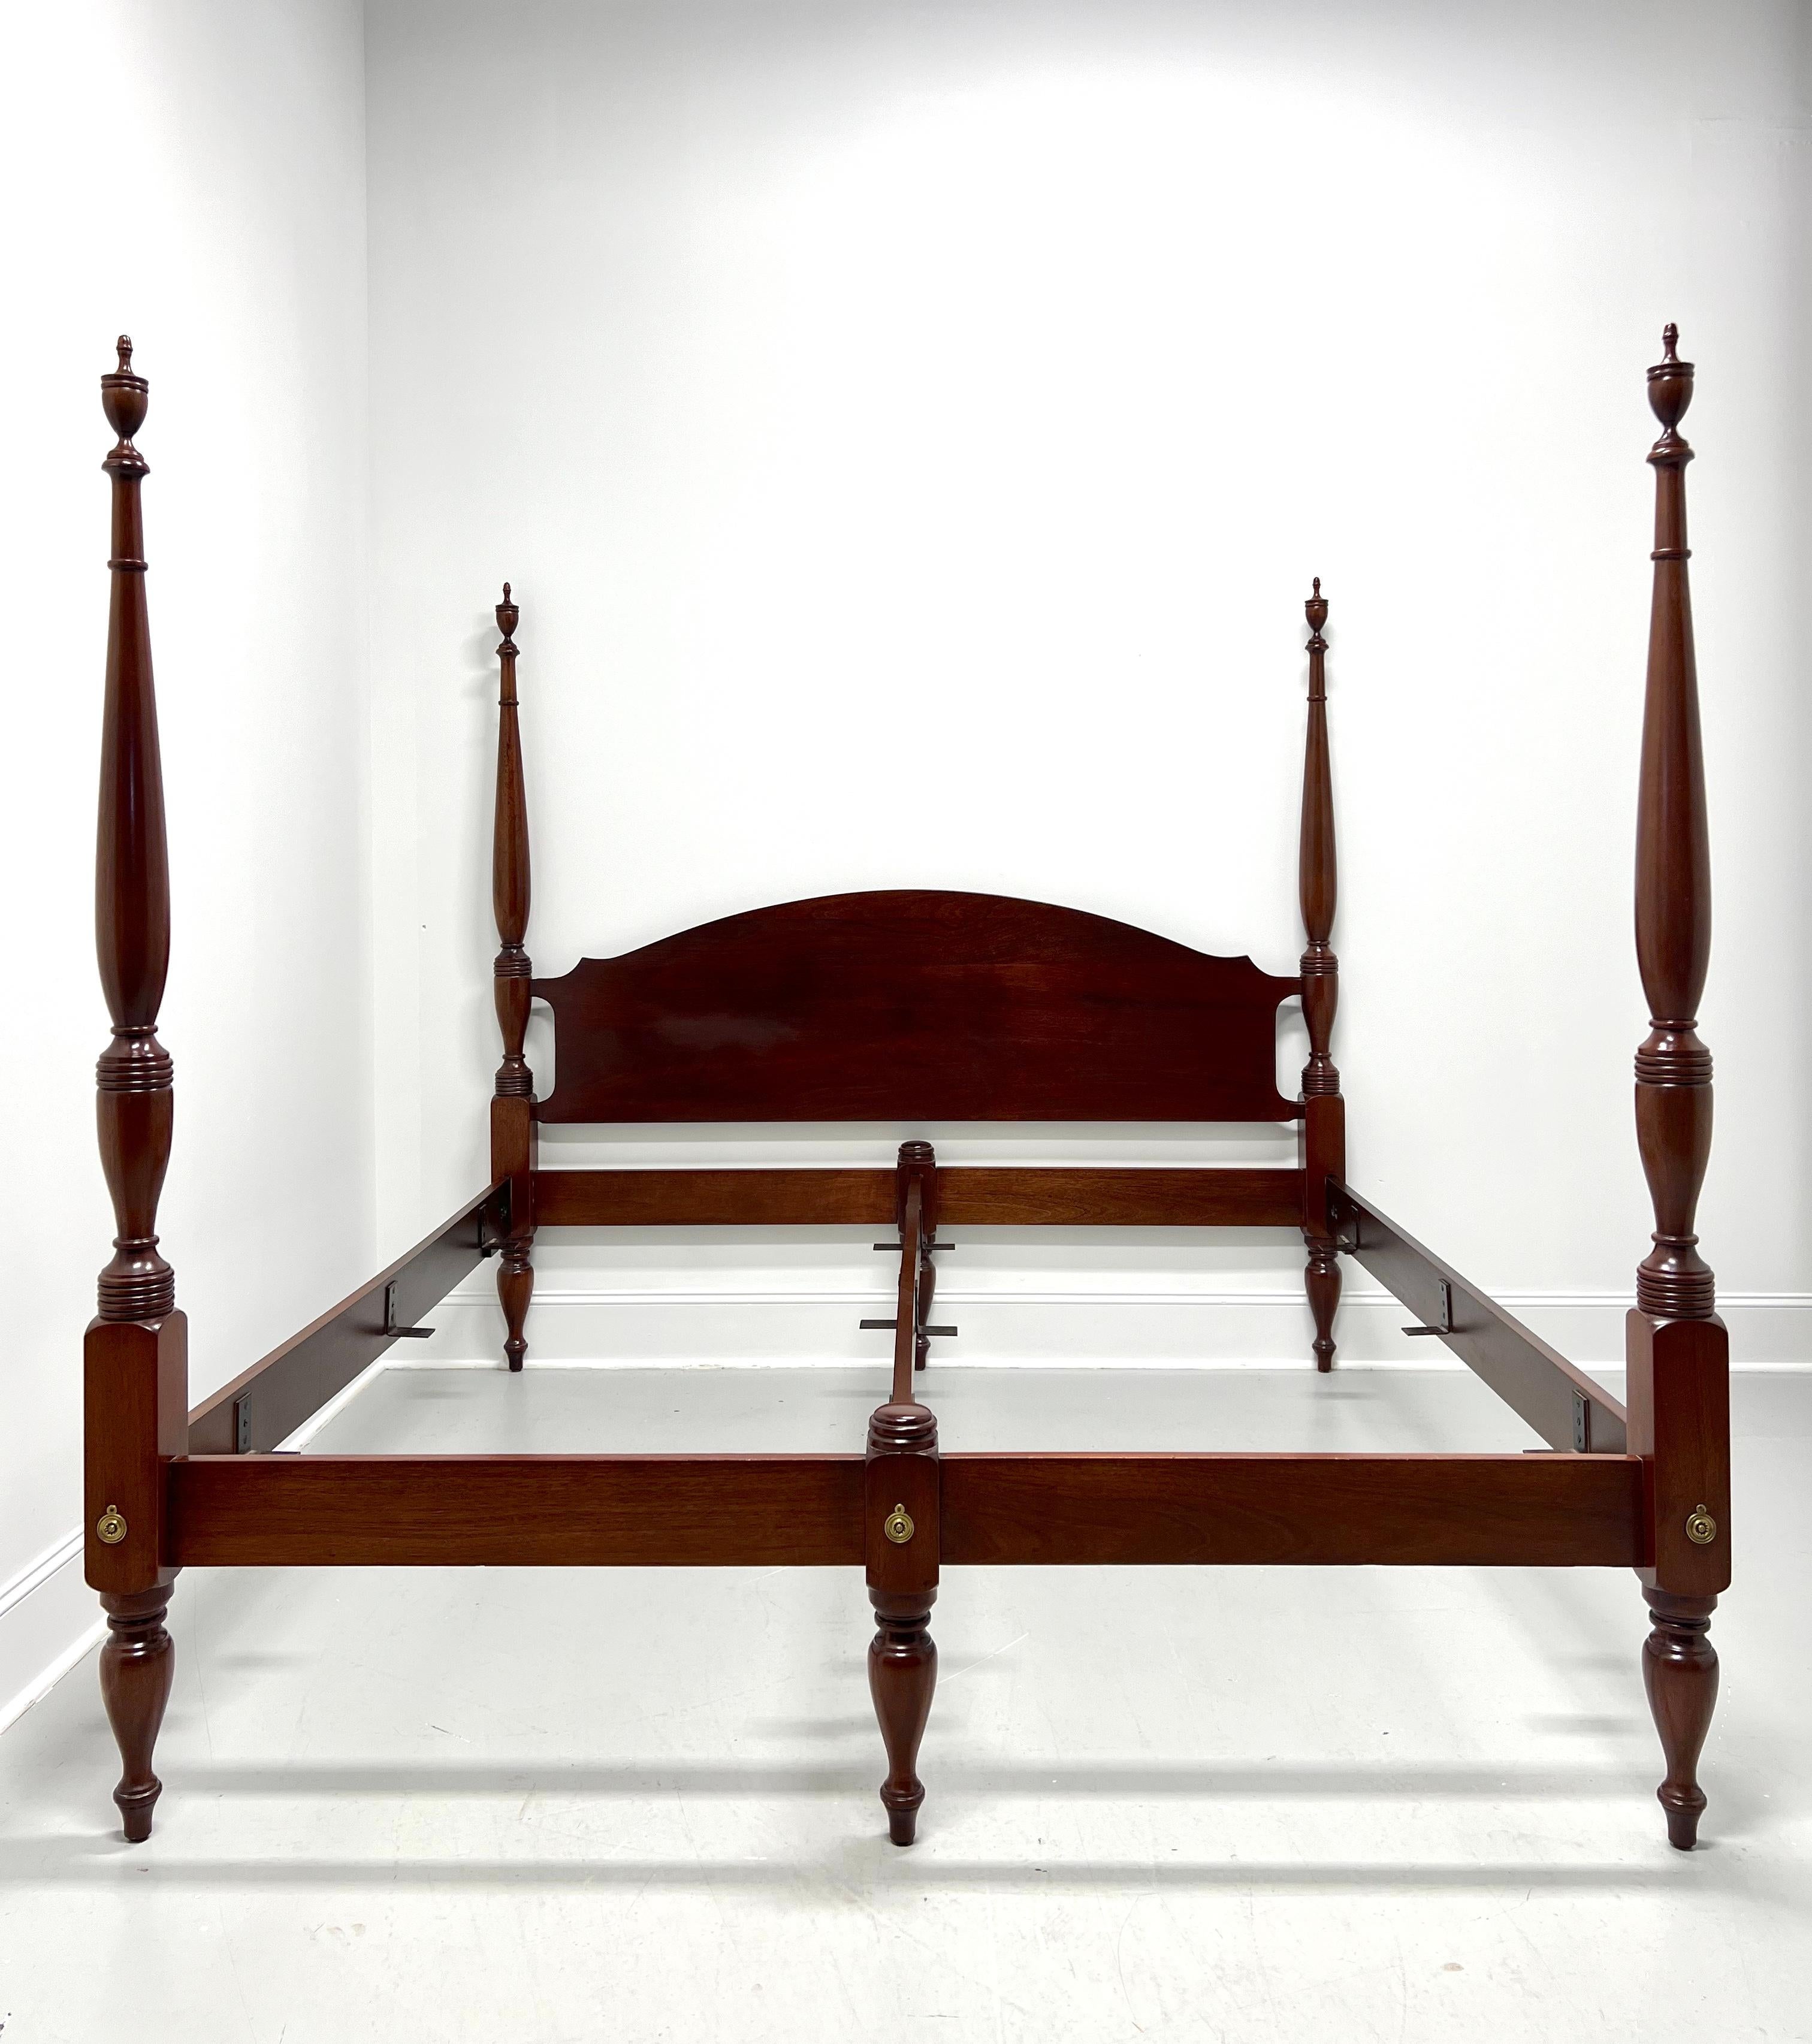 Un lit à baldaquin king size de style traditionnel par le fabricant de meubles de haute qualité Craftique, leur Ashlawn. Tête de lit cintrée en acajou massif, quatre poteaux simples décorativement tournés avec fleurons, deux poteaux bas